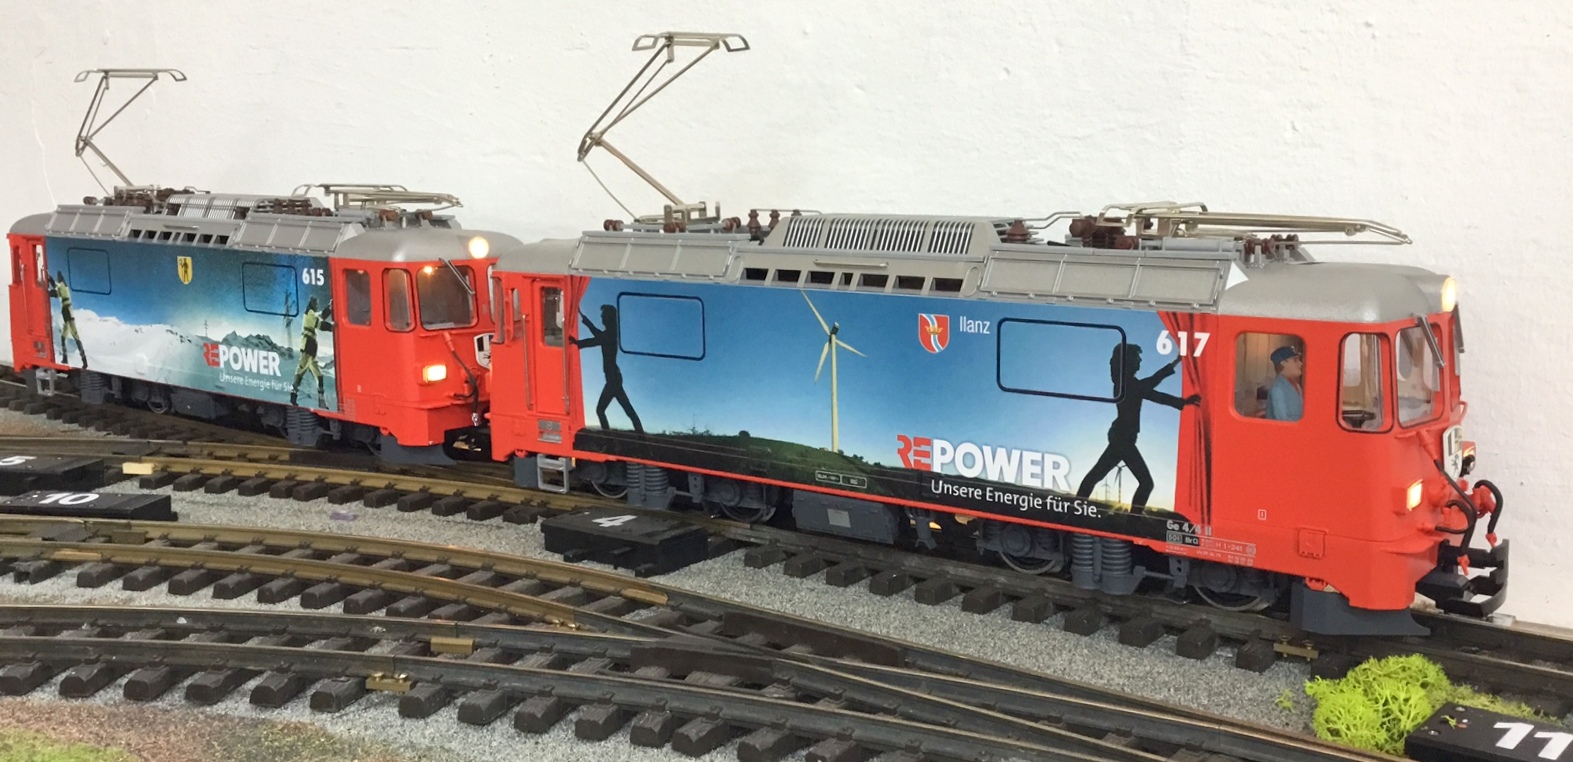 Auf diesem Bild sind die beiden REPower Lokomotiven der RhB, Ge 4/4 II, Nr. 615 und 617 zu sehen. Die Lok 615 zeigt die Werbung fr REPower - Winter und die Lok 617 (Ilanz) die Werbung REPower - Sommer. Wieder zwei herrlichen Motive von KISS Modellbahnservice. Basis ist jeweils eine LGB Ge 4/4 II Lokomotive. Der Auftrag der Werbungen erfolgt in Folientechnik.  